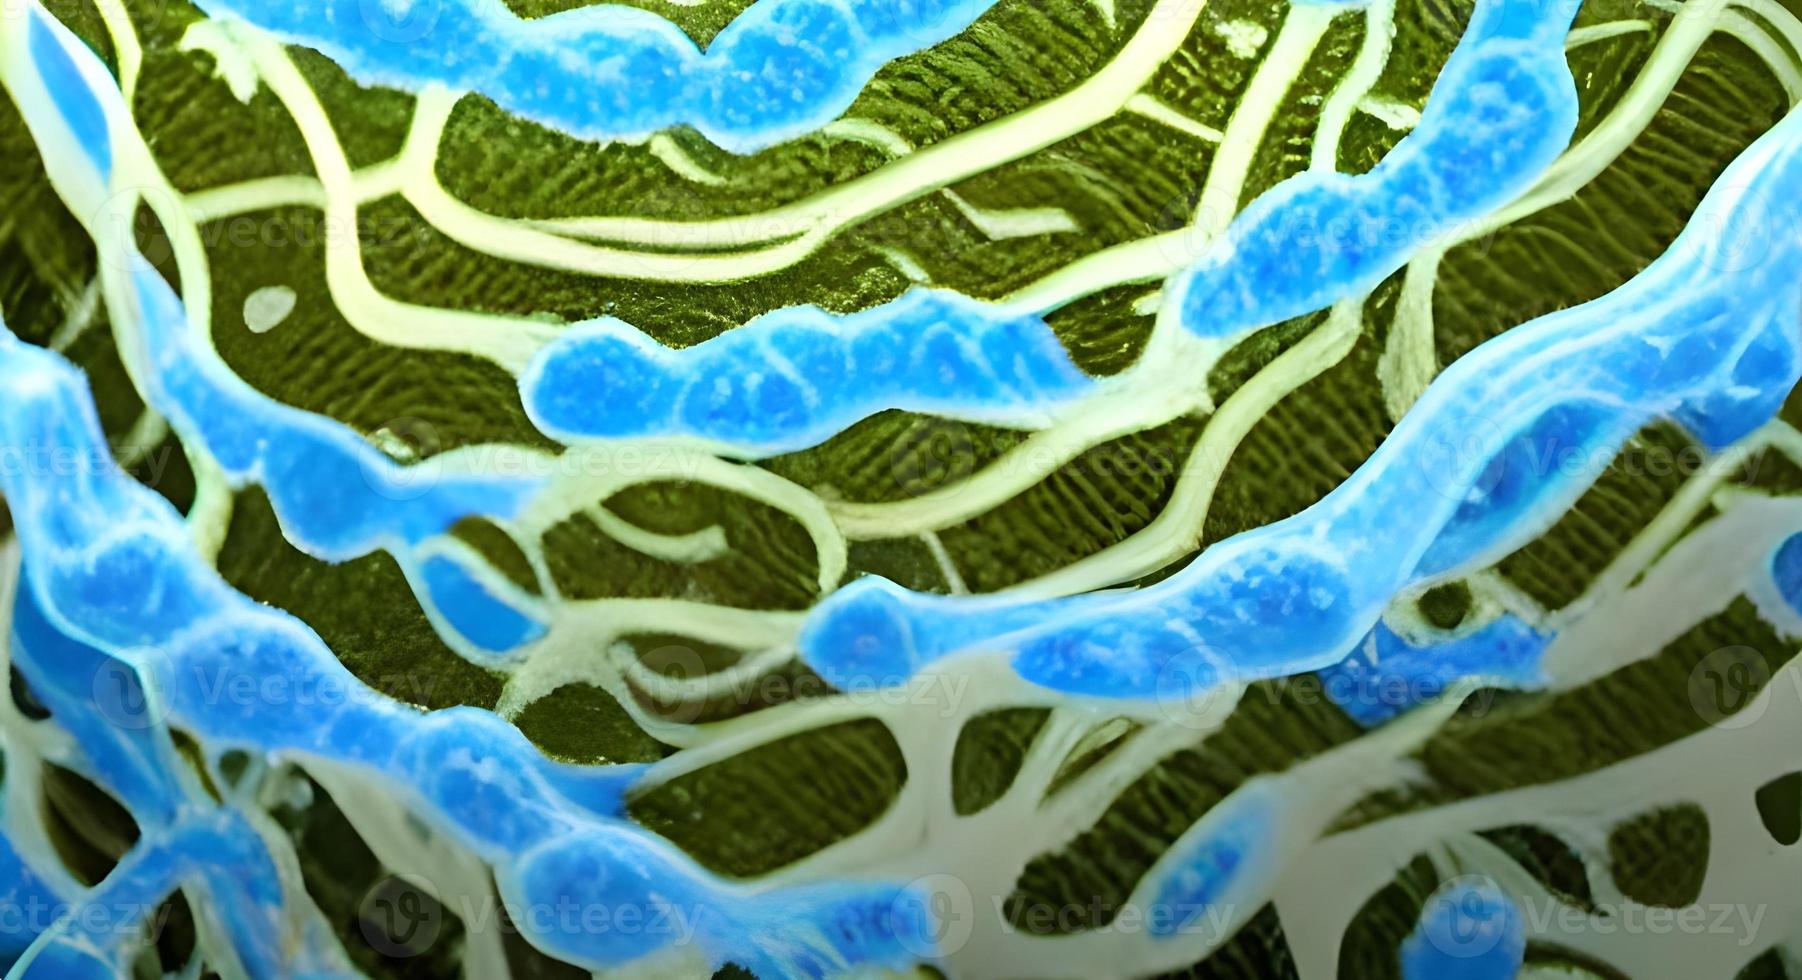 realistisk mikroskopisk virus av olika form på blå suddig bakgrund sömlös mönster illustration foto